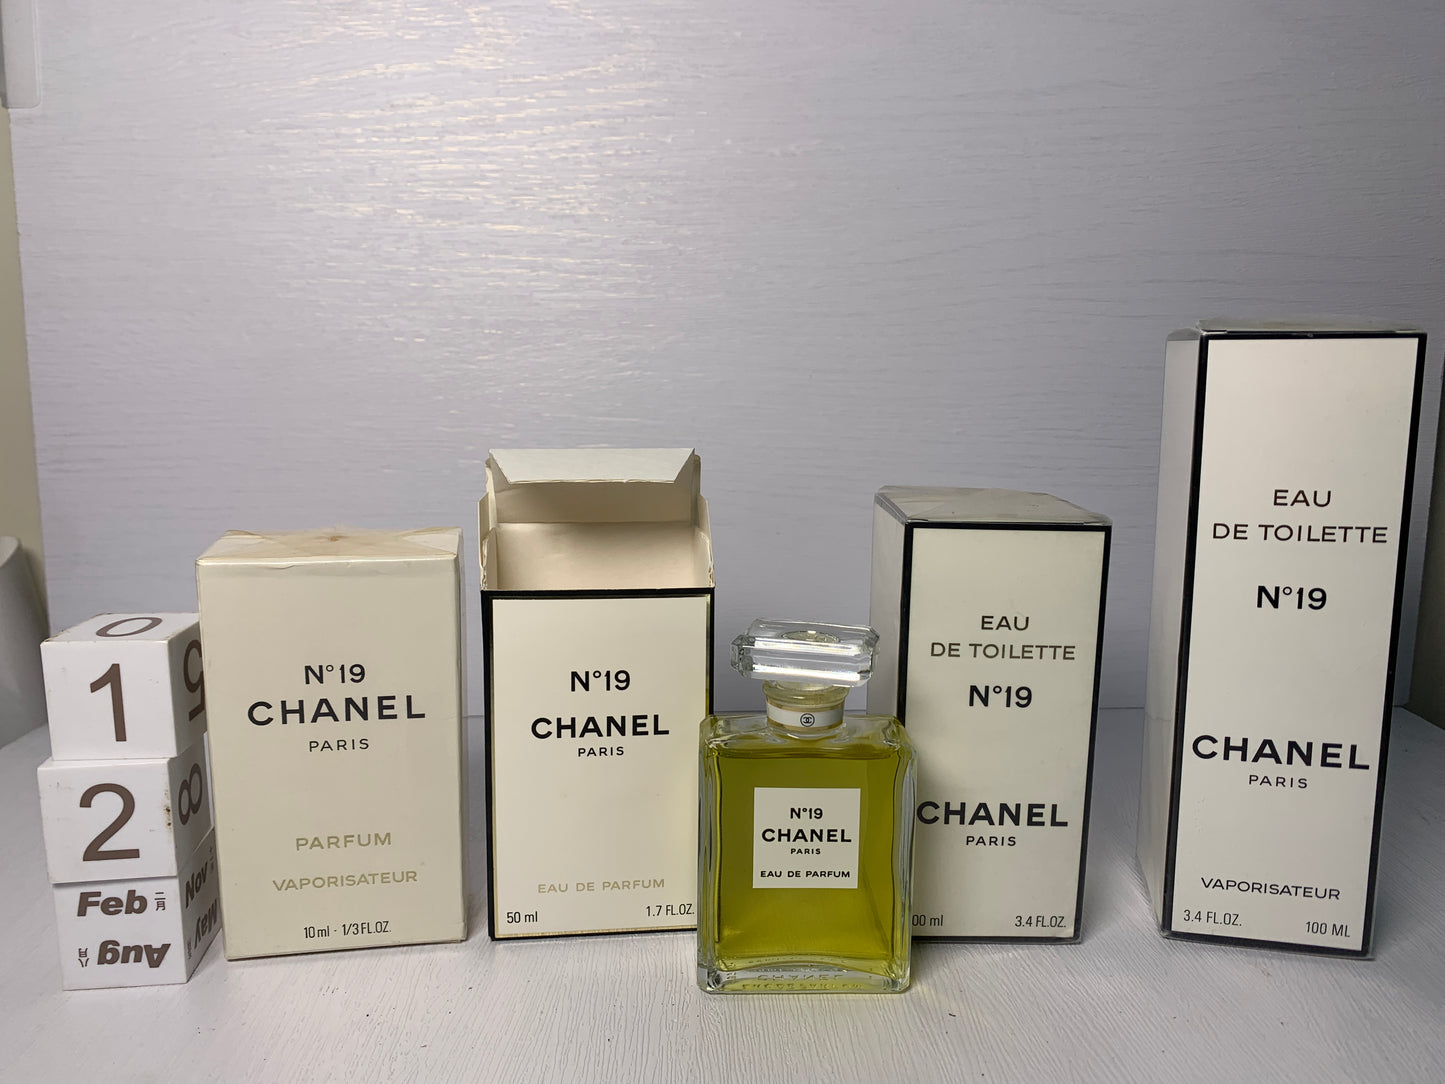 Chanel Pour Monsieur Eau De Toilette Concentree Edt 75ml 2.5 -  Norway